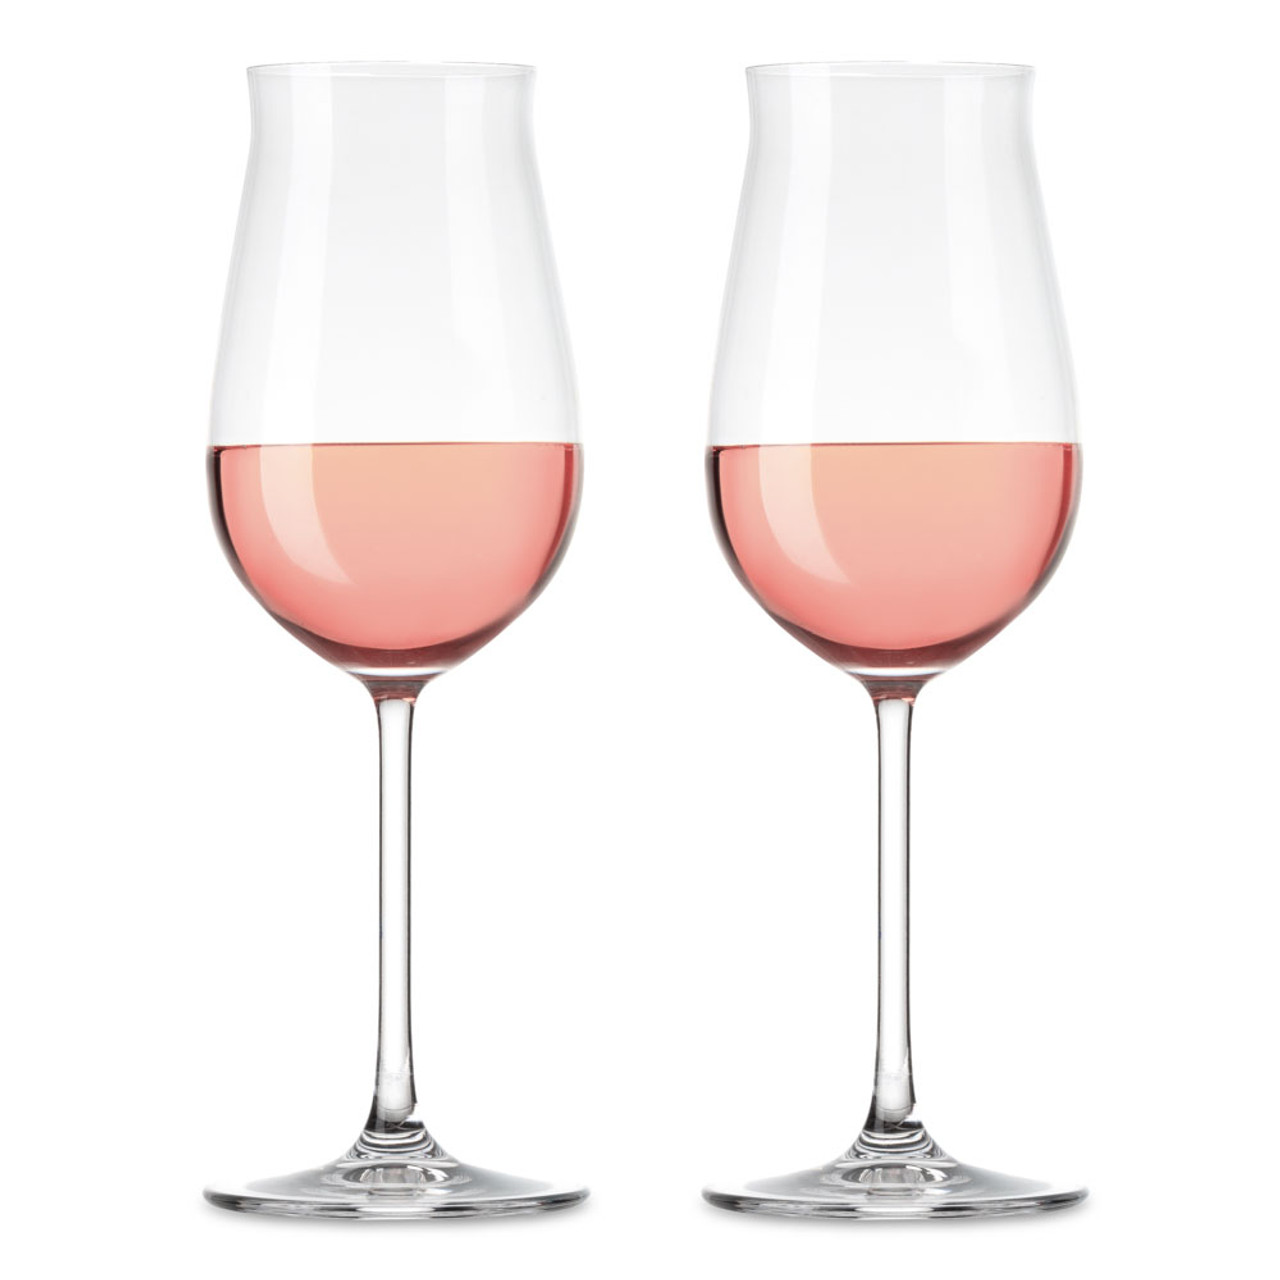 (old) Now $87.74 - Set of 6 Dark Rose Color Wine Glasses